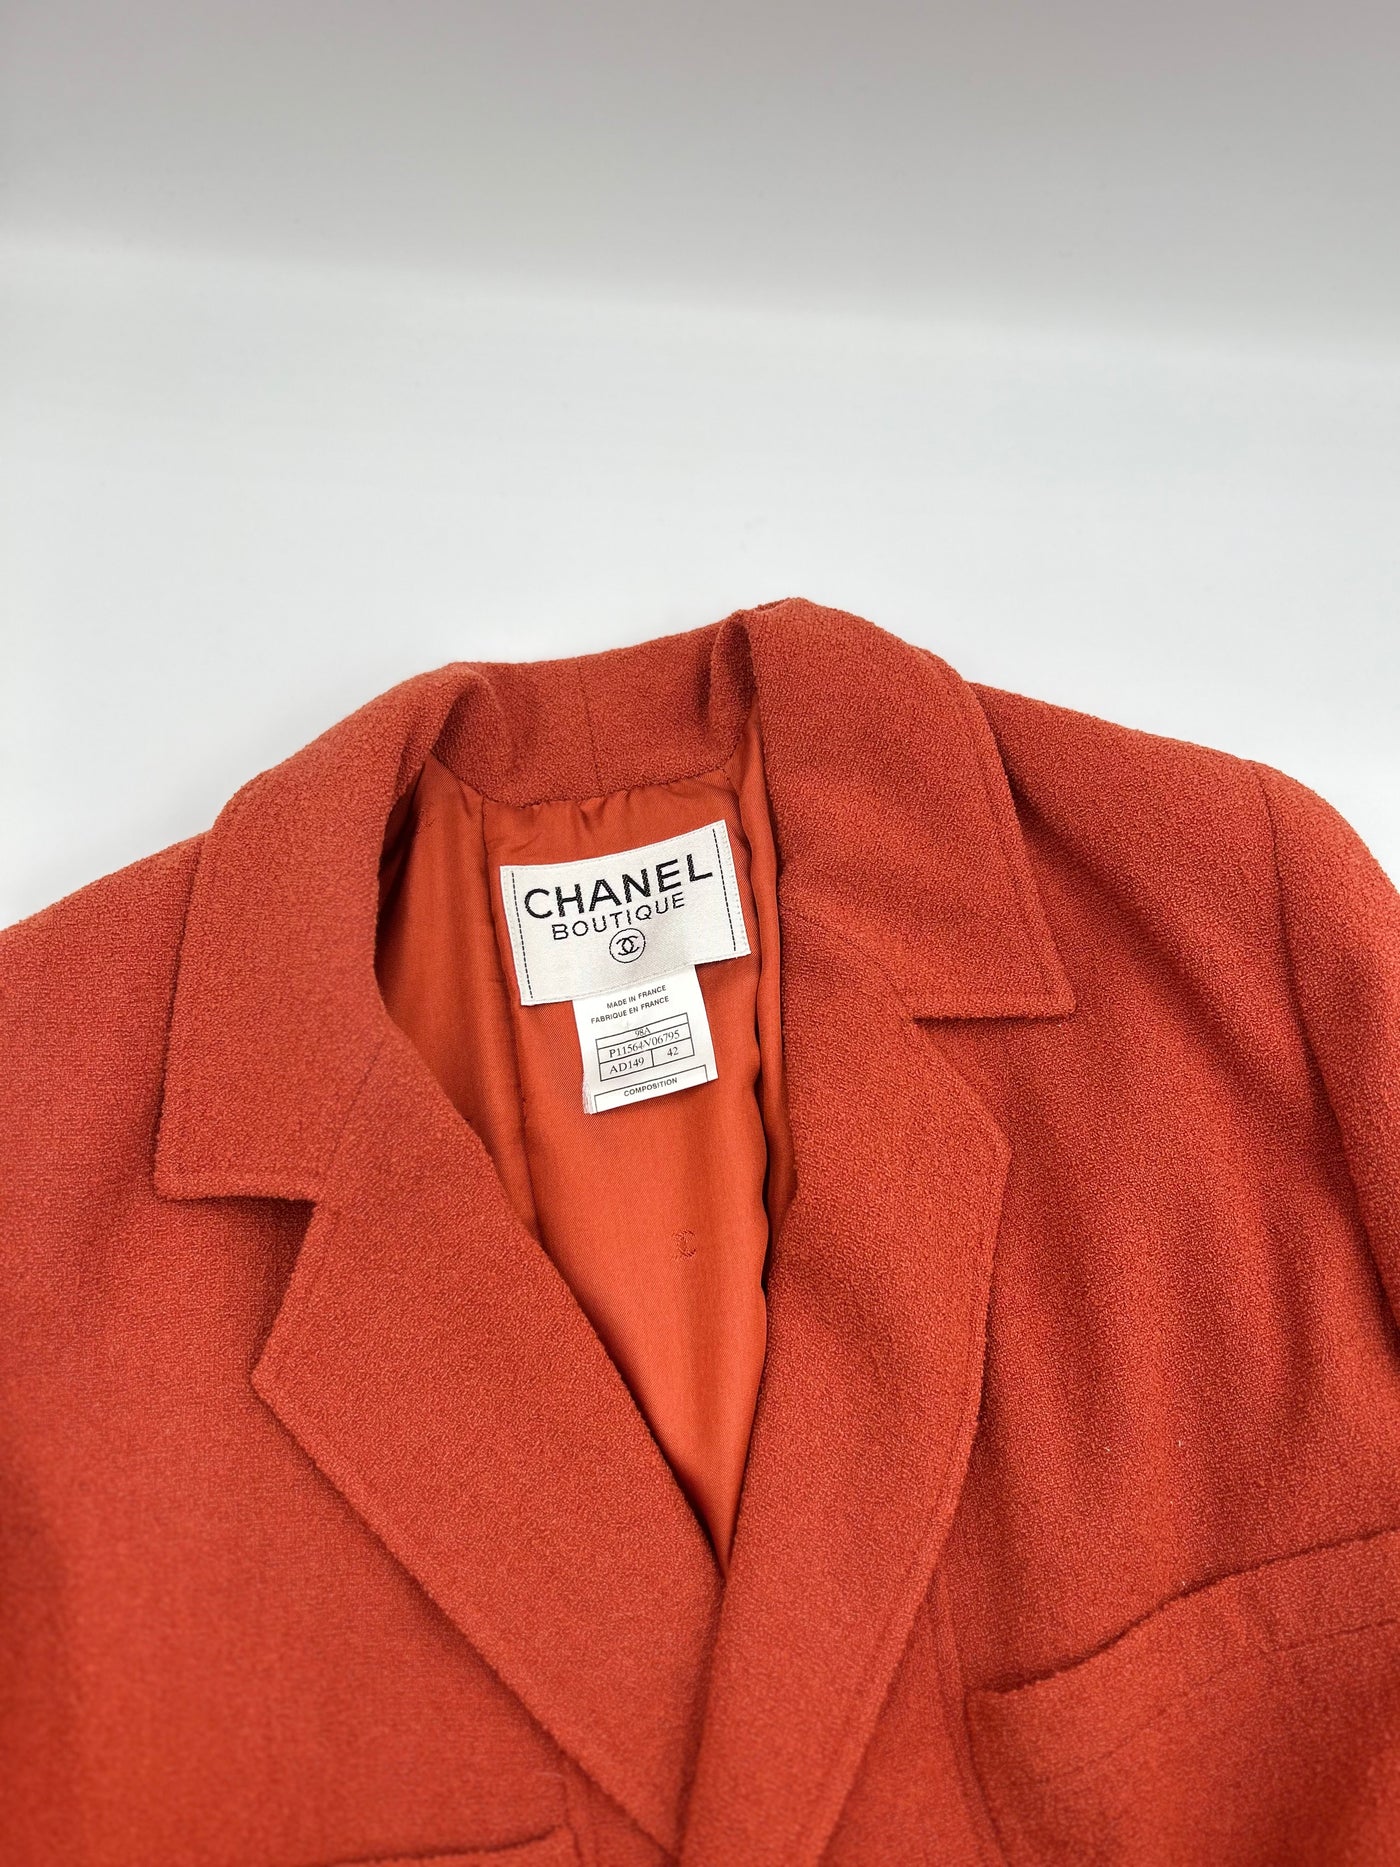 CHANEL vintage 1998 jacket orange burnt size 42